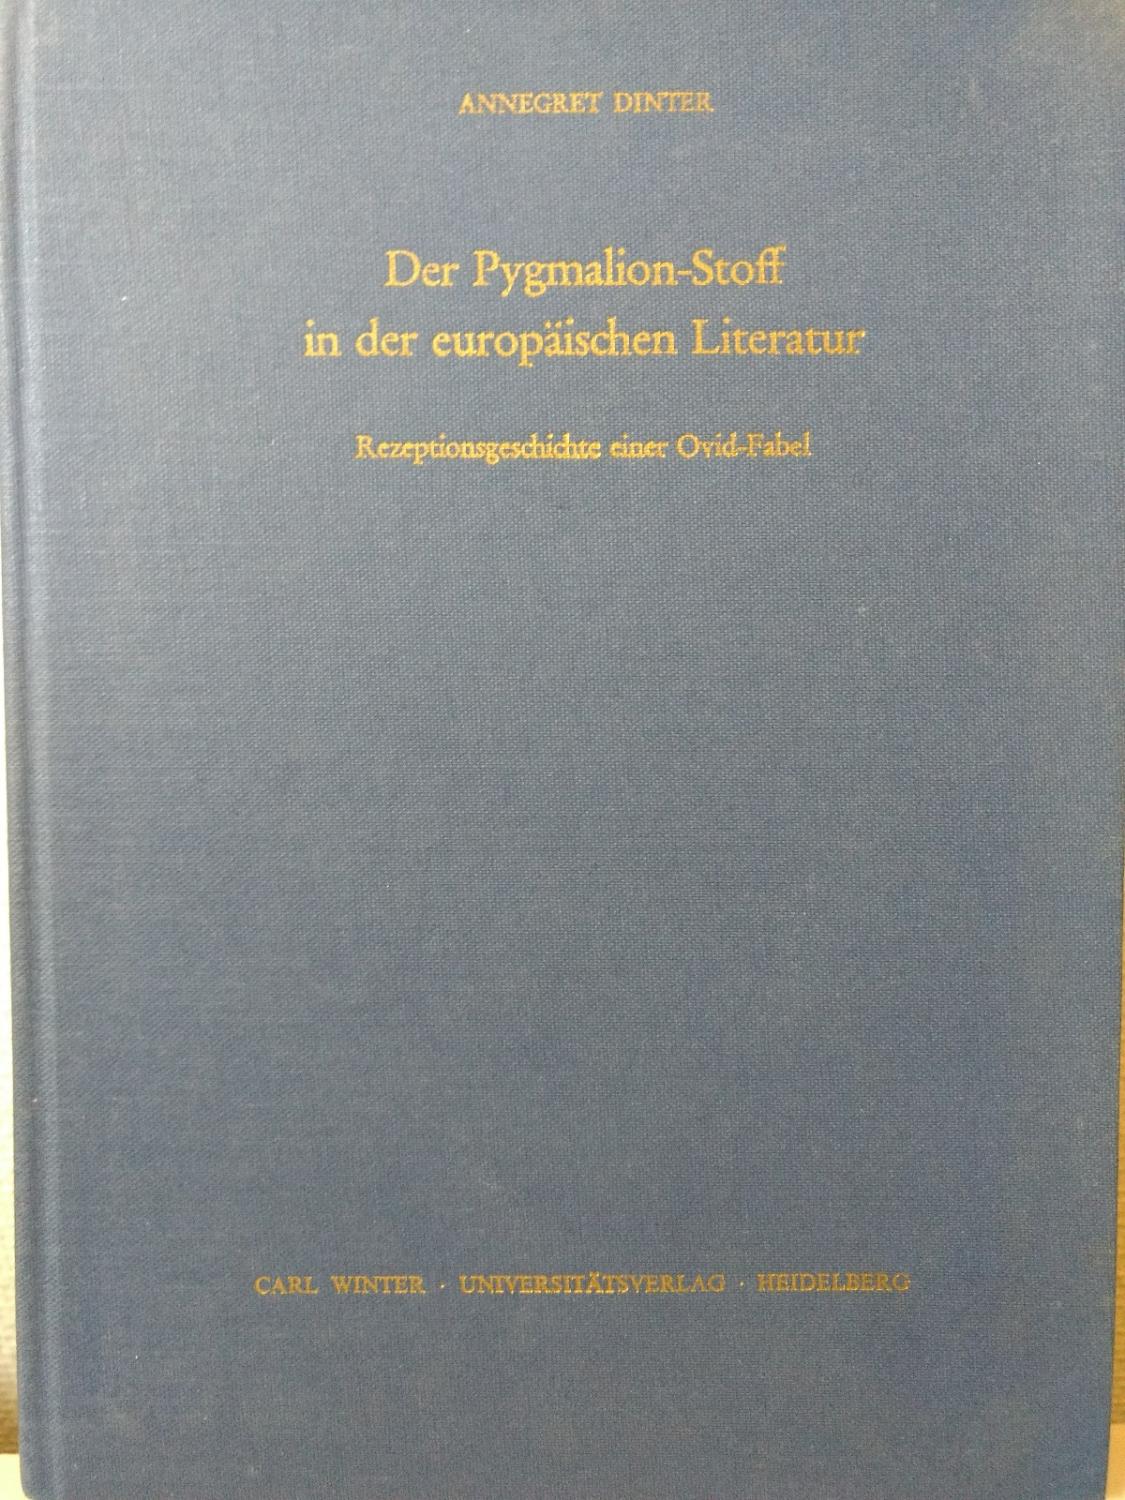 Der Pygmalion-Stoff in der europäischen Literatur: Rezeptionsgeschichte einer Ovid-Fabel (Studien zum Fortwirken der Antike)